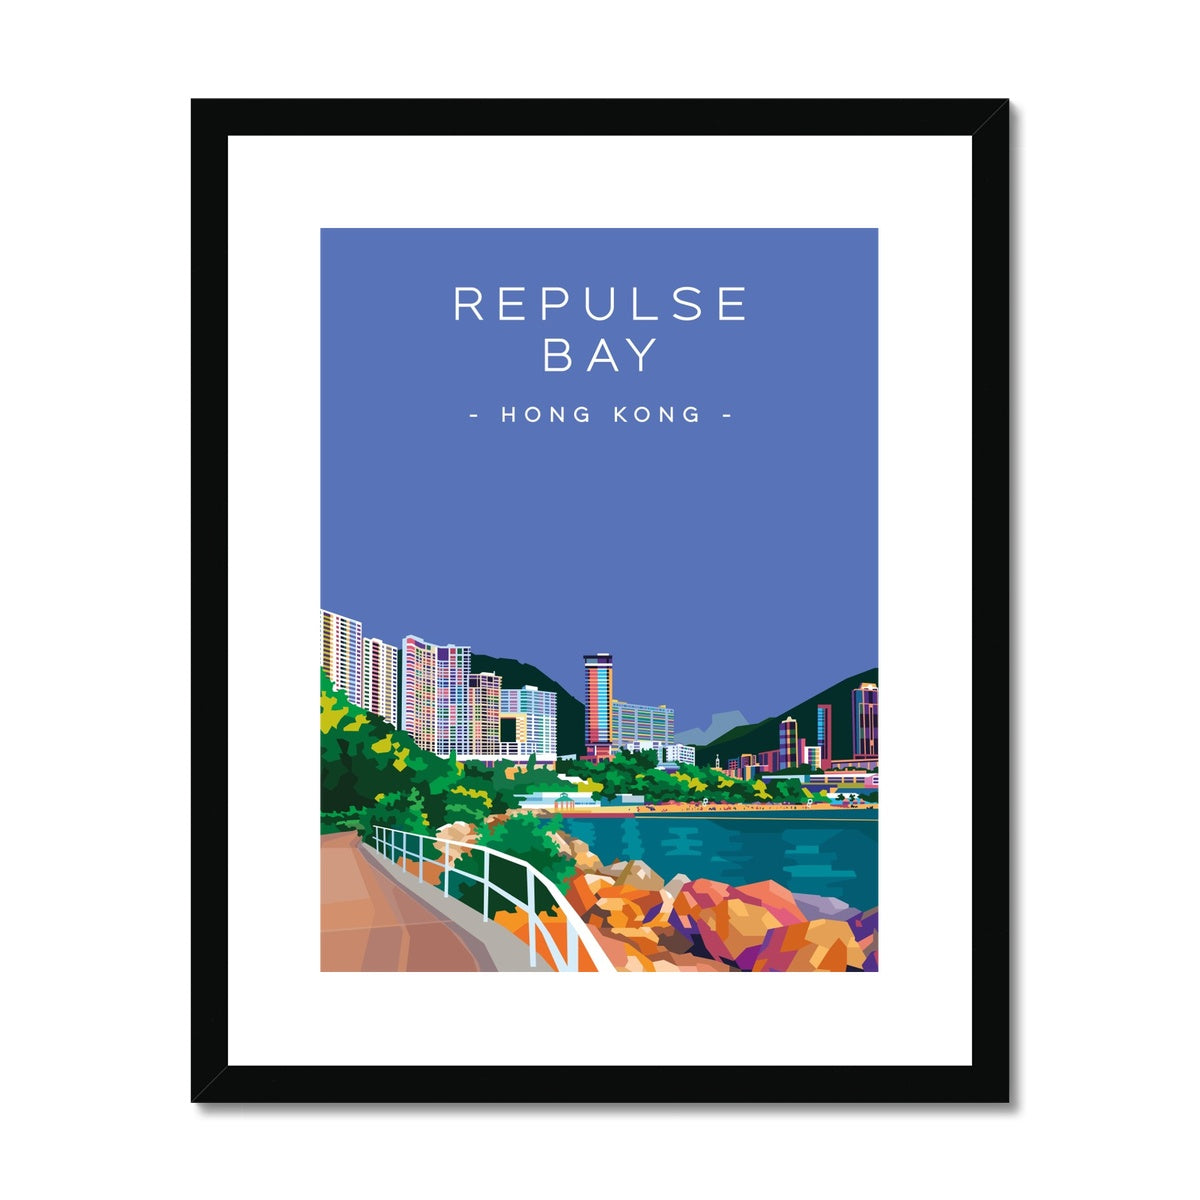 Hong Kong Travel - Repulse Bay Framed & Mounted Print